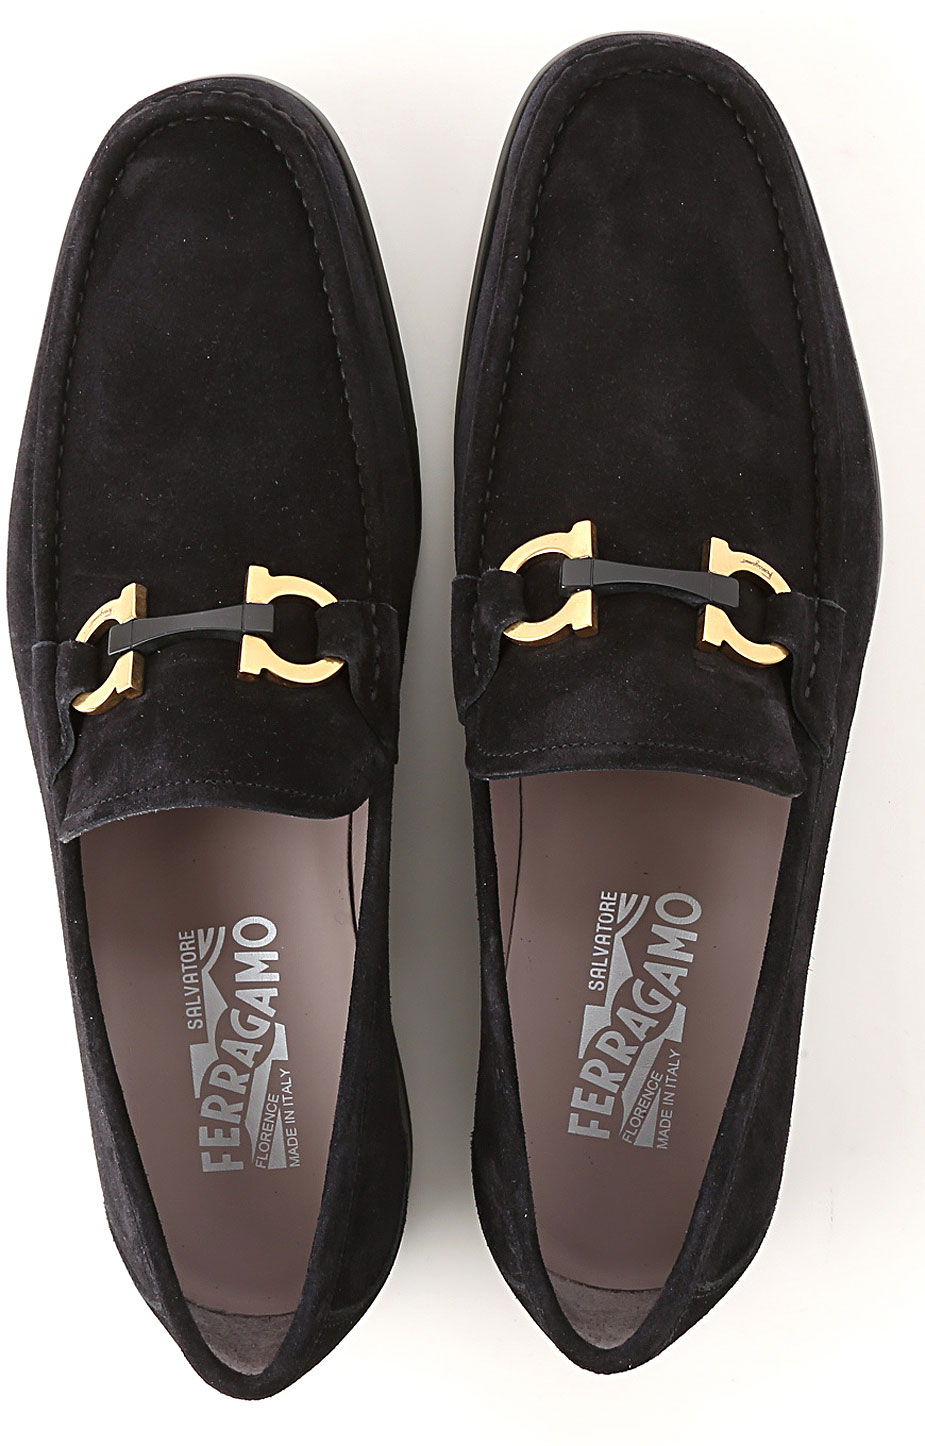 Mens Shoes Salvatore Ferragamo, Style code: 706276-grandioso-029457